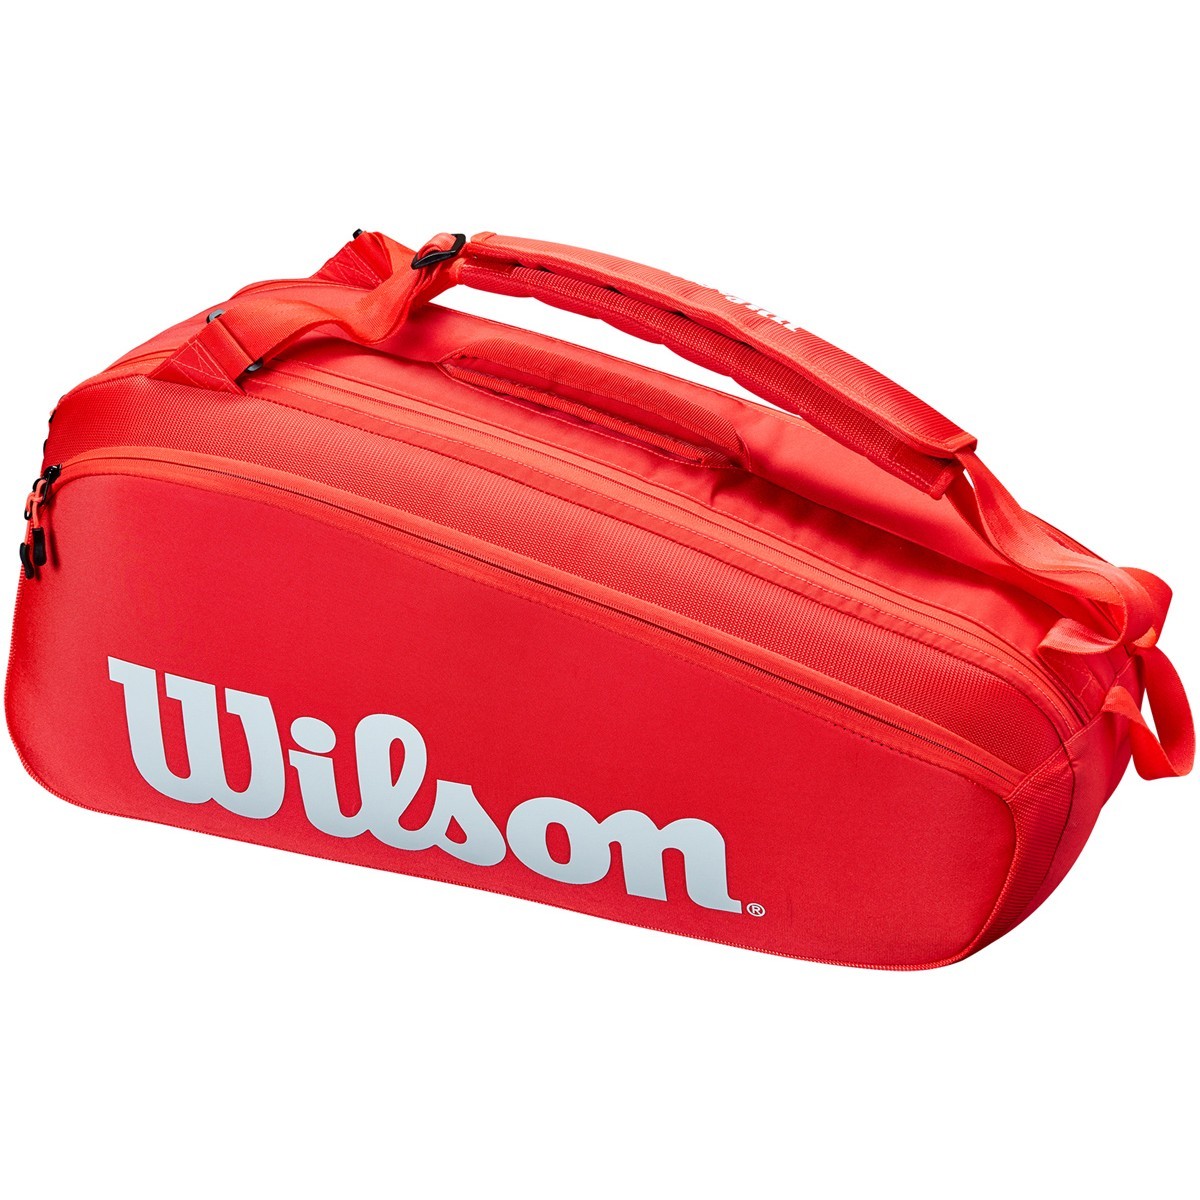 Теннисная сумка Wilson Super Tour 6 Pk red